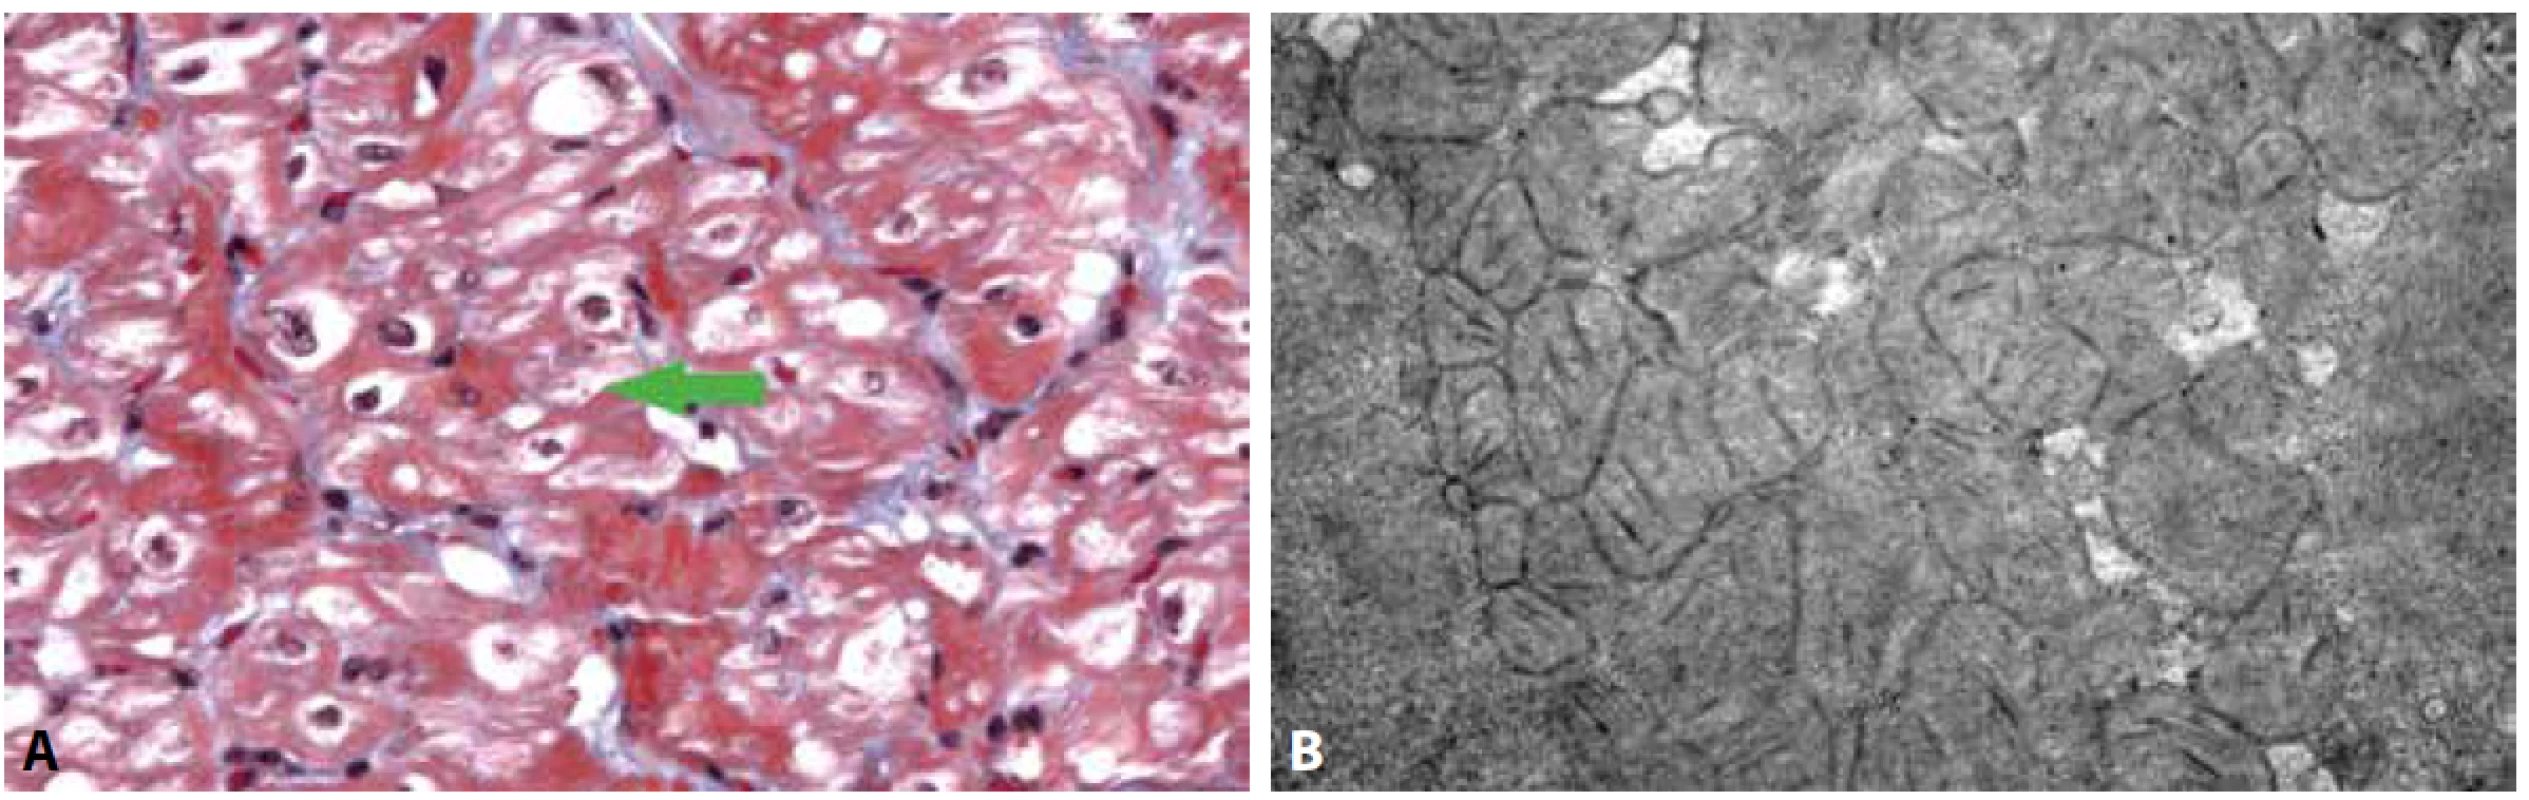 Kardiomyopatie u dítěte s vrozenou mitochondriální poruchou (mitochondriální kardiomyopatie).<br>
A: Vakuolizace kardiomyocytů s patrnými zmnoženými mitochondriemi a záchytem obřích mitochondrií (šipka) (Massonův trichrom, 400x).<br>
B: Ultrastruktura cytoplazmy kardiomyocytů s přítomností hojných atypických mitochondrií, které vykazují tvarové abnormality, paralelně uspořádané
kristy a denzní tělíska v mitochondriální matrix.